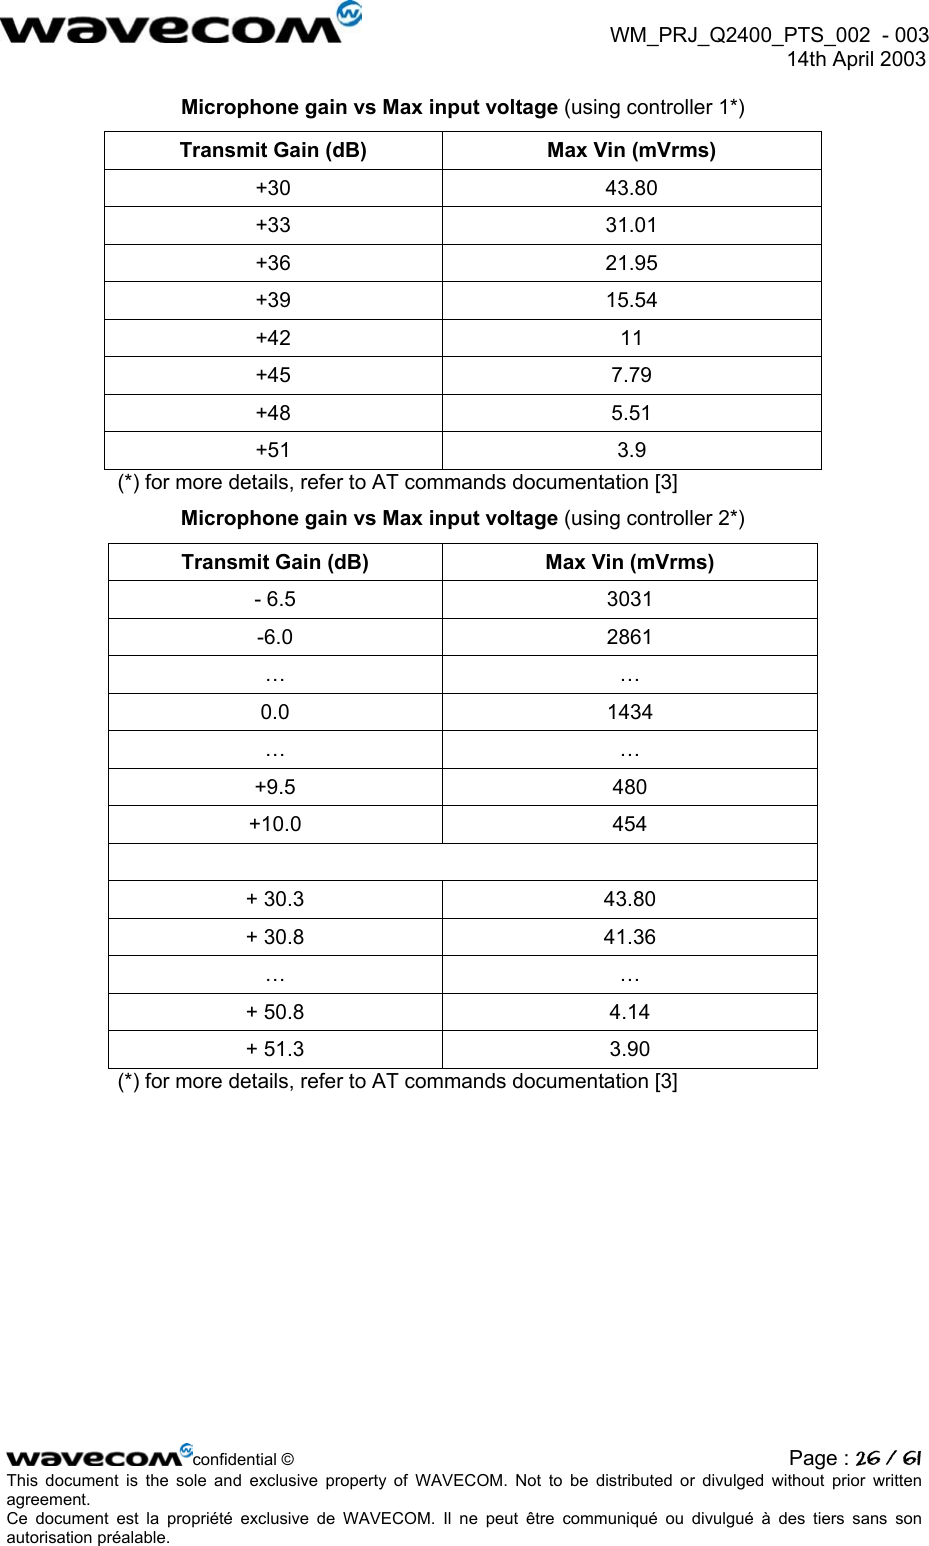  WM_PRJ_Q2400_PTS_002  - 003  14th April 2003   Microphone gain vs Max input voltage (using controller 1*) Transmit Gain (dB)  Max Vin (mVrms) +30 43.80 +33 31.01 +36 21.95 +39 15.54 +42 11 +45 7.79 +48 5.51 +51 3.9 (*) for more details, refer to AT commands documentation [3] Microphone gain vs Max input voltage (using controller 2*) Transmit Gain (dB)  Max Vin (mVrms) - 6.5  3031 -6.0 2861 … … 0.0 1434 … … +9.5 480 +10.0 454  + 30.3  43.80 + 30.8  41.36 … … + 50.8  4.14 + 51.3  3.90 (*) for more details, refer to AT commands documentation [3] confidential © Page : 26 / 61This document is the sole and exclusive property of WAVECOM. Not to be distributed or divulged without prior written agreement.  Ce document est la propriété exclusive de WAVECOM. Il ne peut être communiqué ou divulgué à des tiers sans son autorisation préalable.  